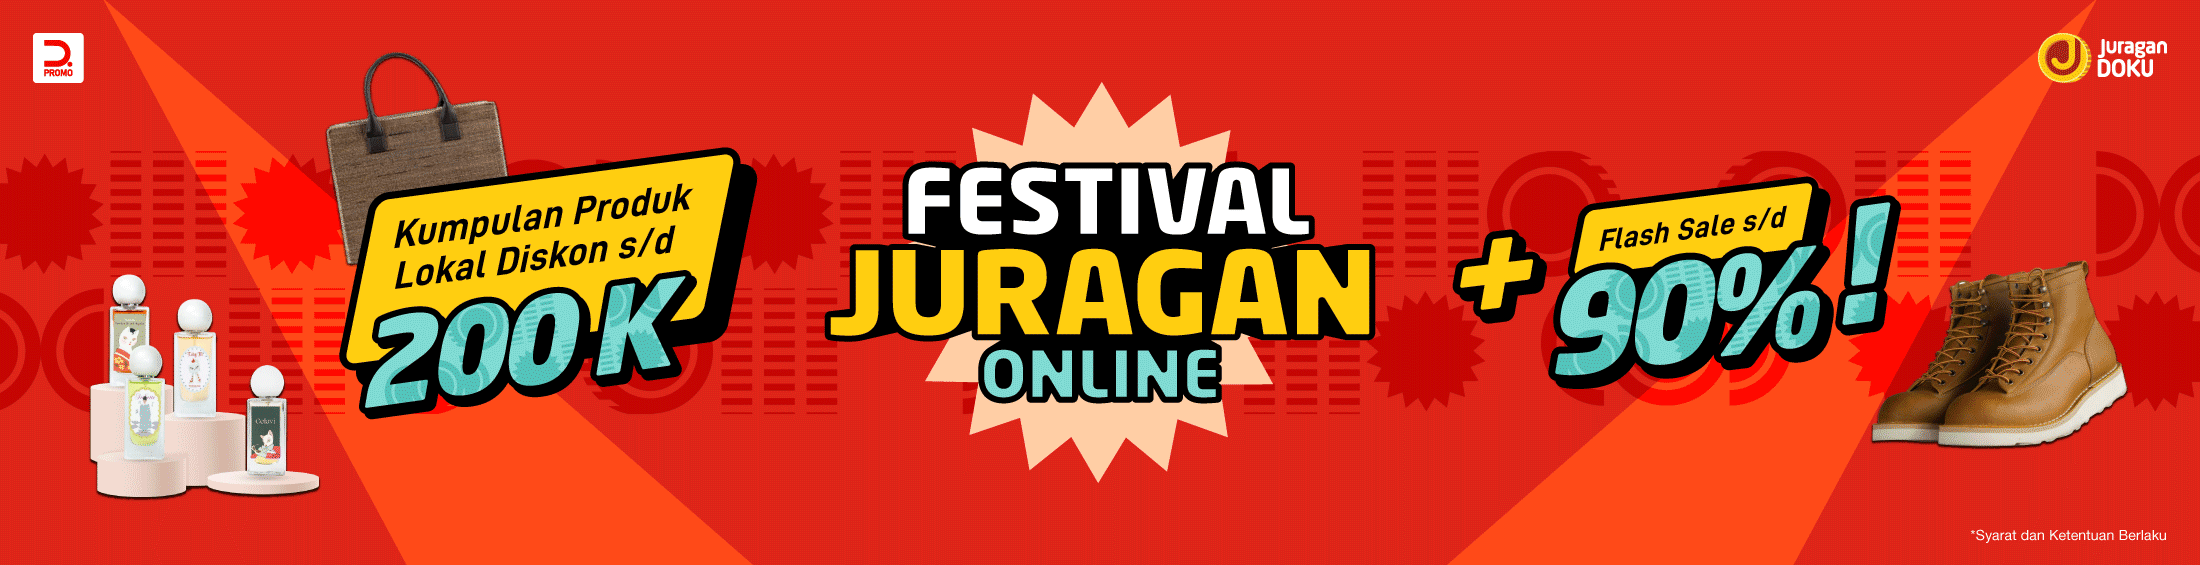 Festival Juragan Online: Kumpulan Produk Lokal Diskon Hingga 200K